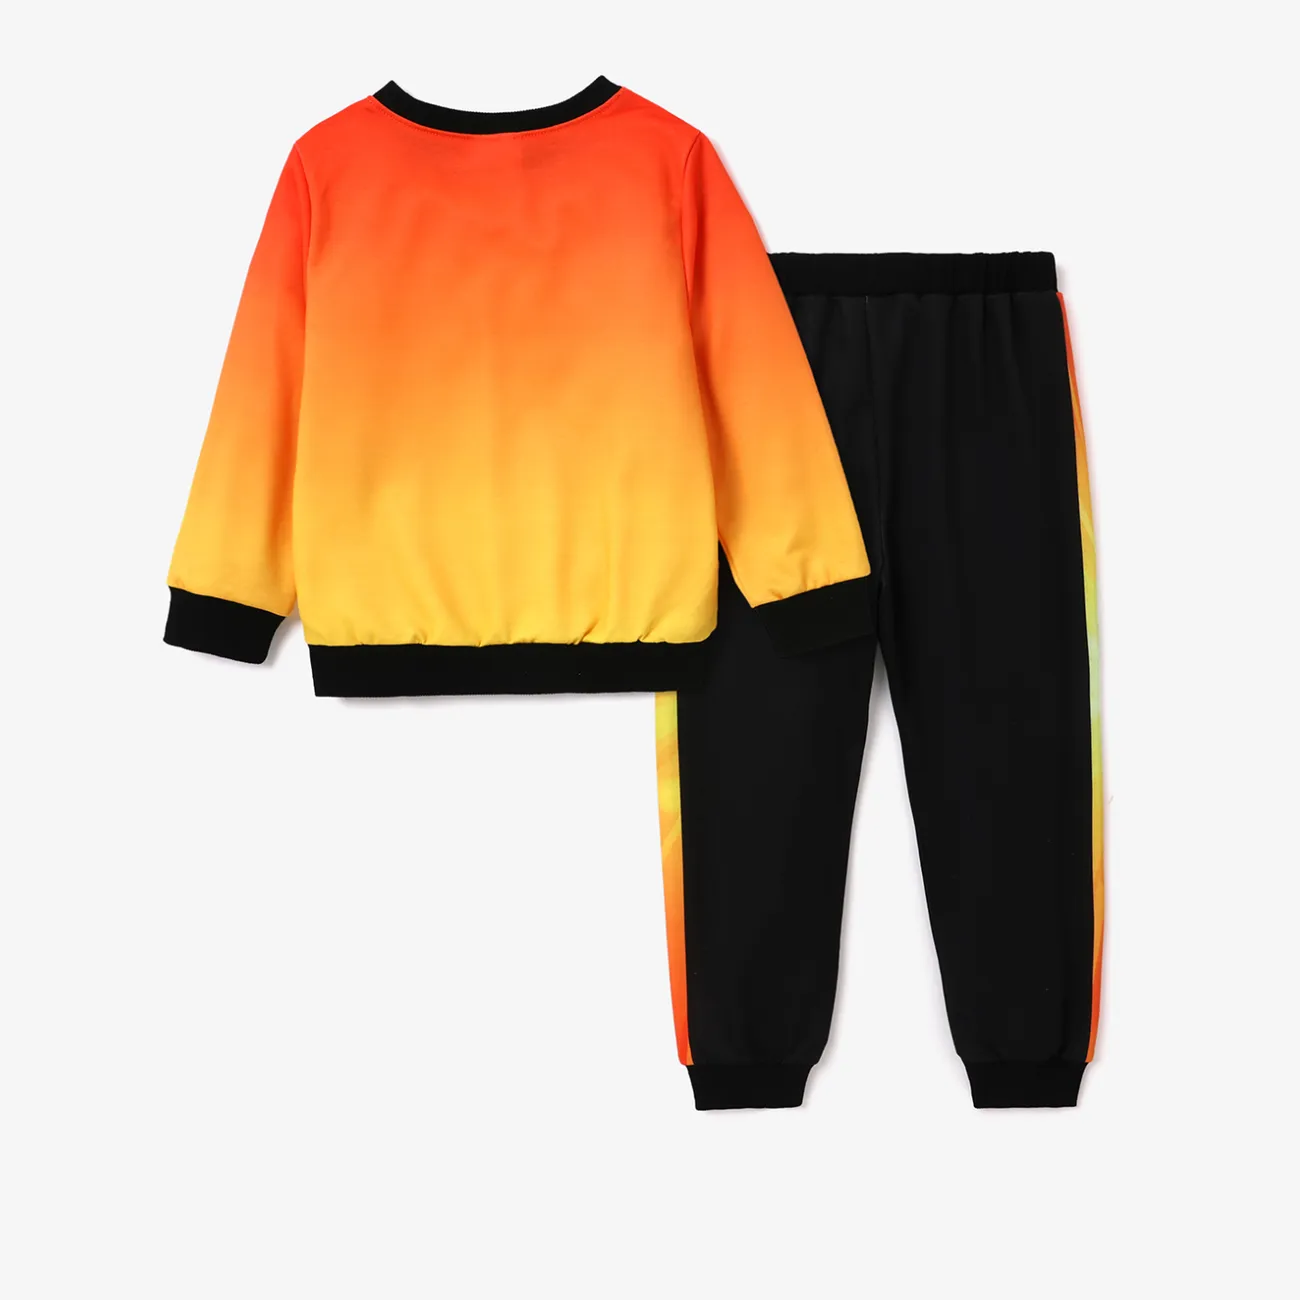 Helfer auf vier Pfoten 2 Stück Kleinkinder Jungen Kindlich Sweatshirt-Sets Orange Gelb big image 1